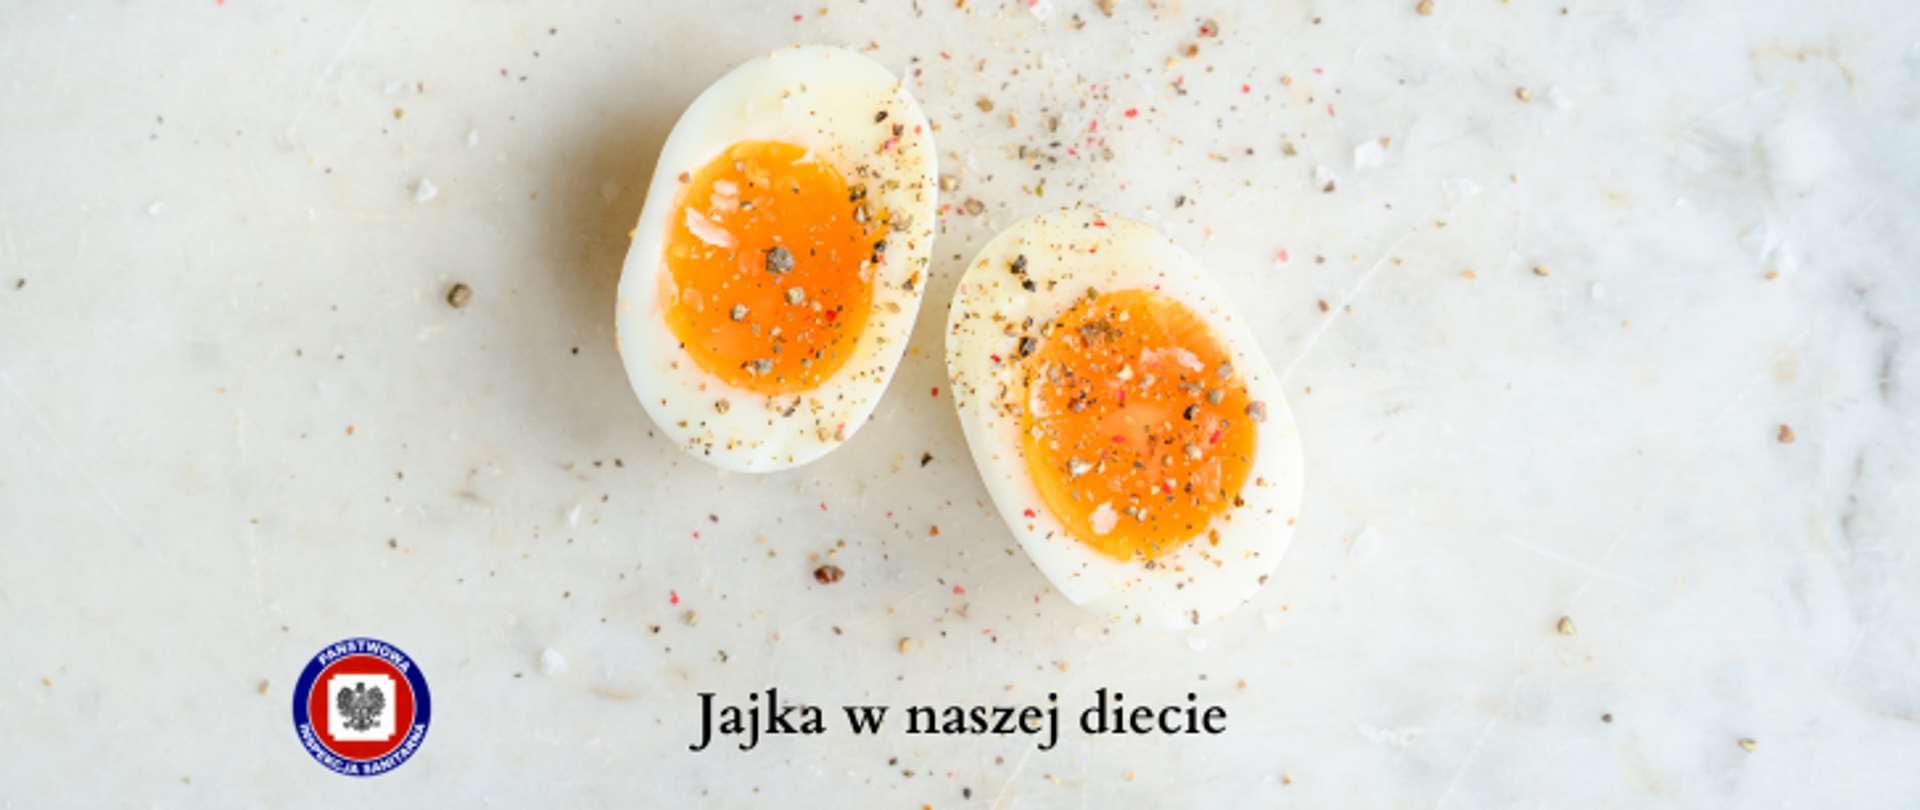 Na jasnym marmurowym stole leży rozkrojone jajko posypane przyprawami, poniżej ciemny napis Jajka w naszej diecie, z jego lewej logo Państwowej Inspekcji Sanitarnej.